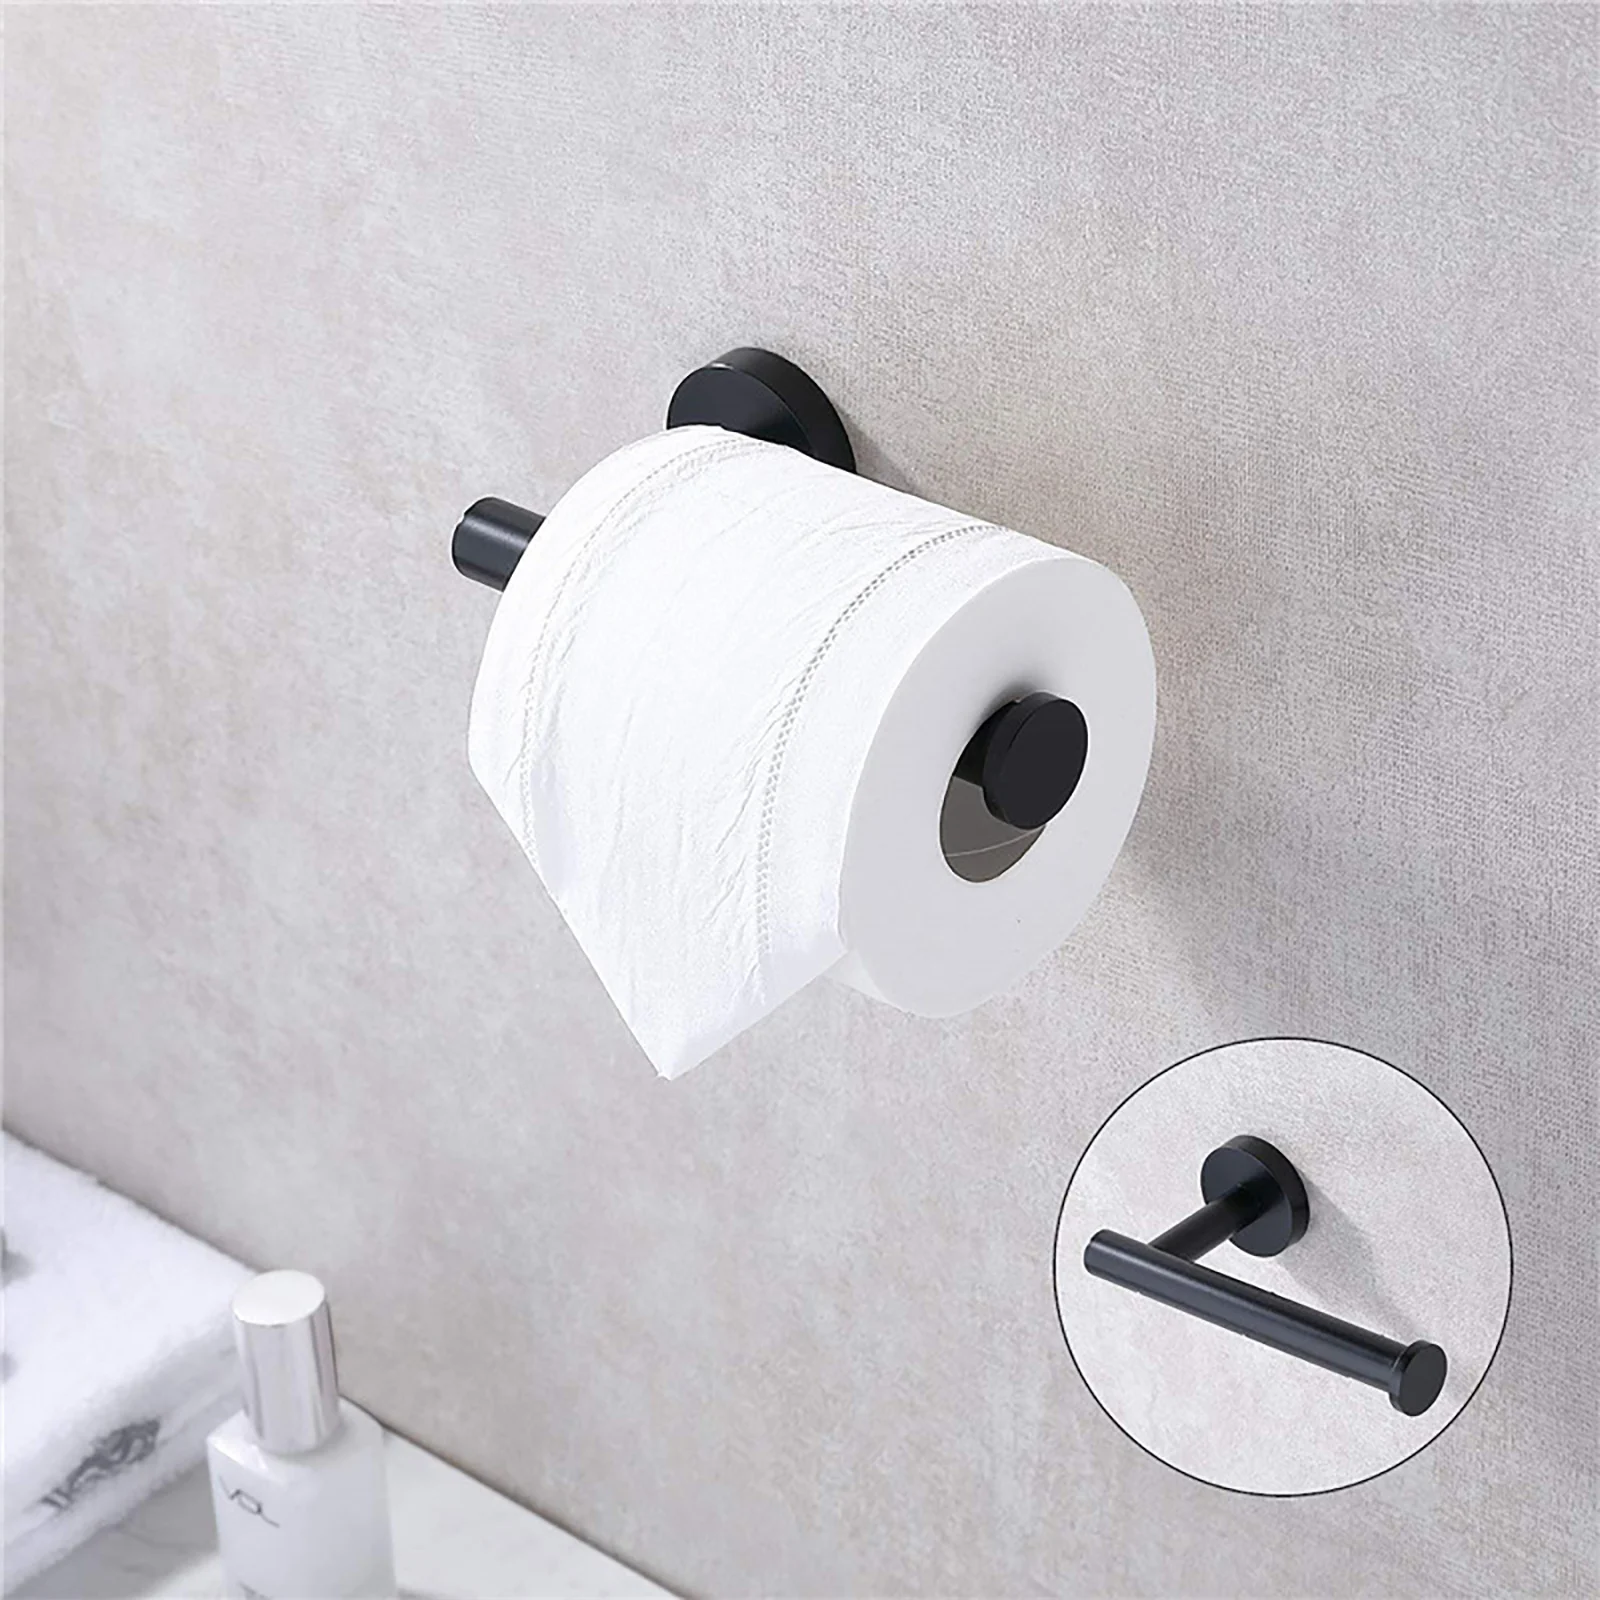 

Держатель для туалетной бумаги, держатель для салфеток из нержавеющей стали, нержавеющий дозатор туалетной бумаги для кухни, ванной комнат...